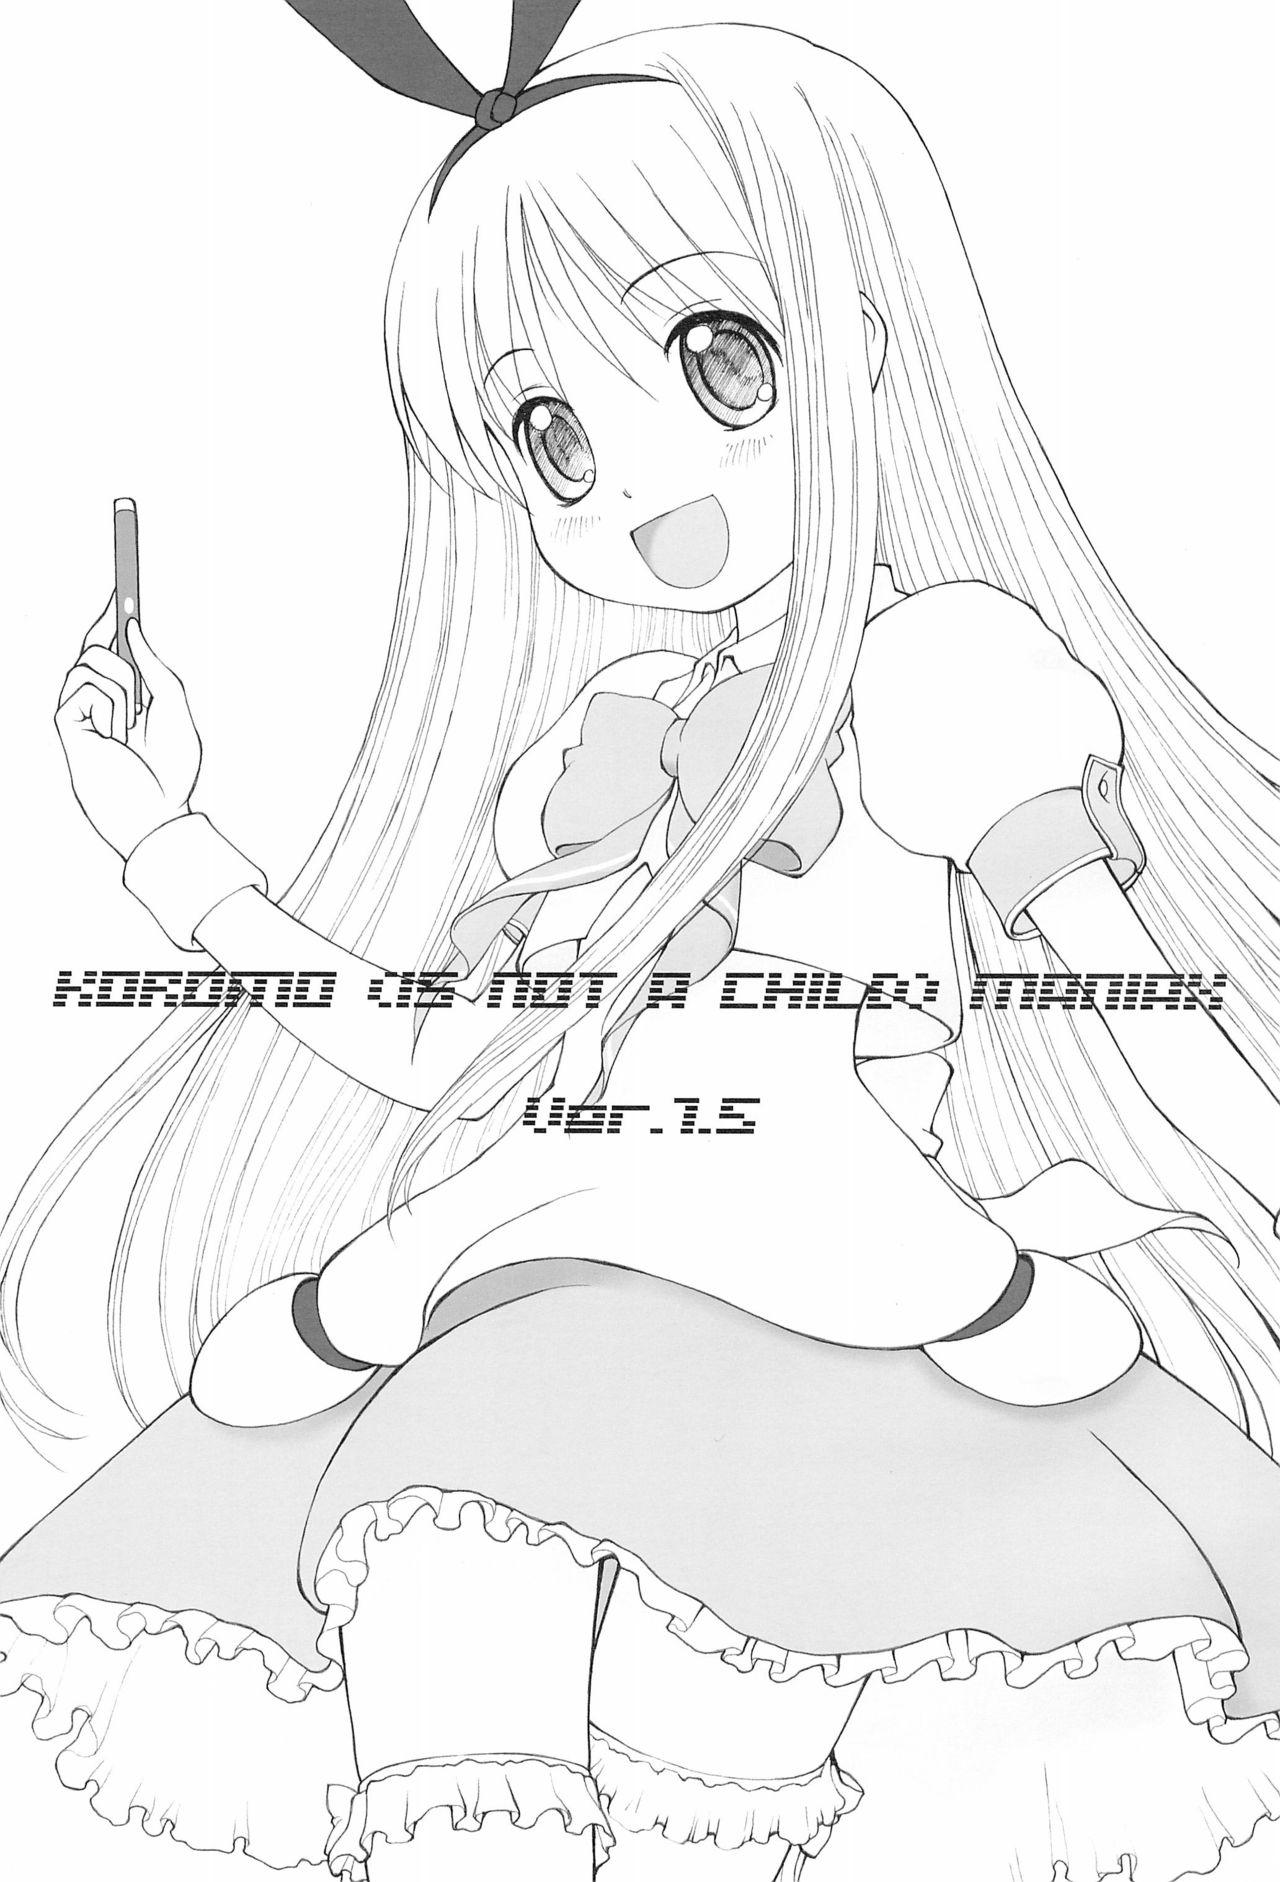 Retro (C78) [Fujinomiya Millenium (Velfro)] KOROMO (IS NOT A CHILD) MANIAX Ver1.5 (Saki) - Saki Hooker - Page 3